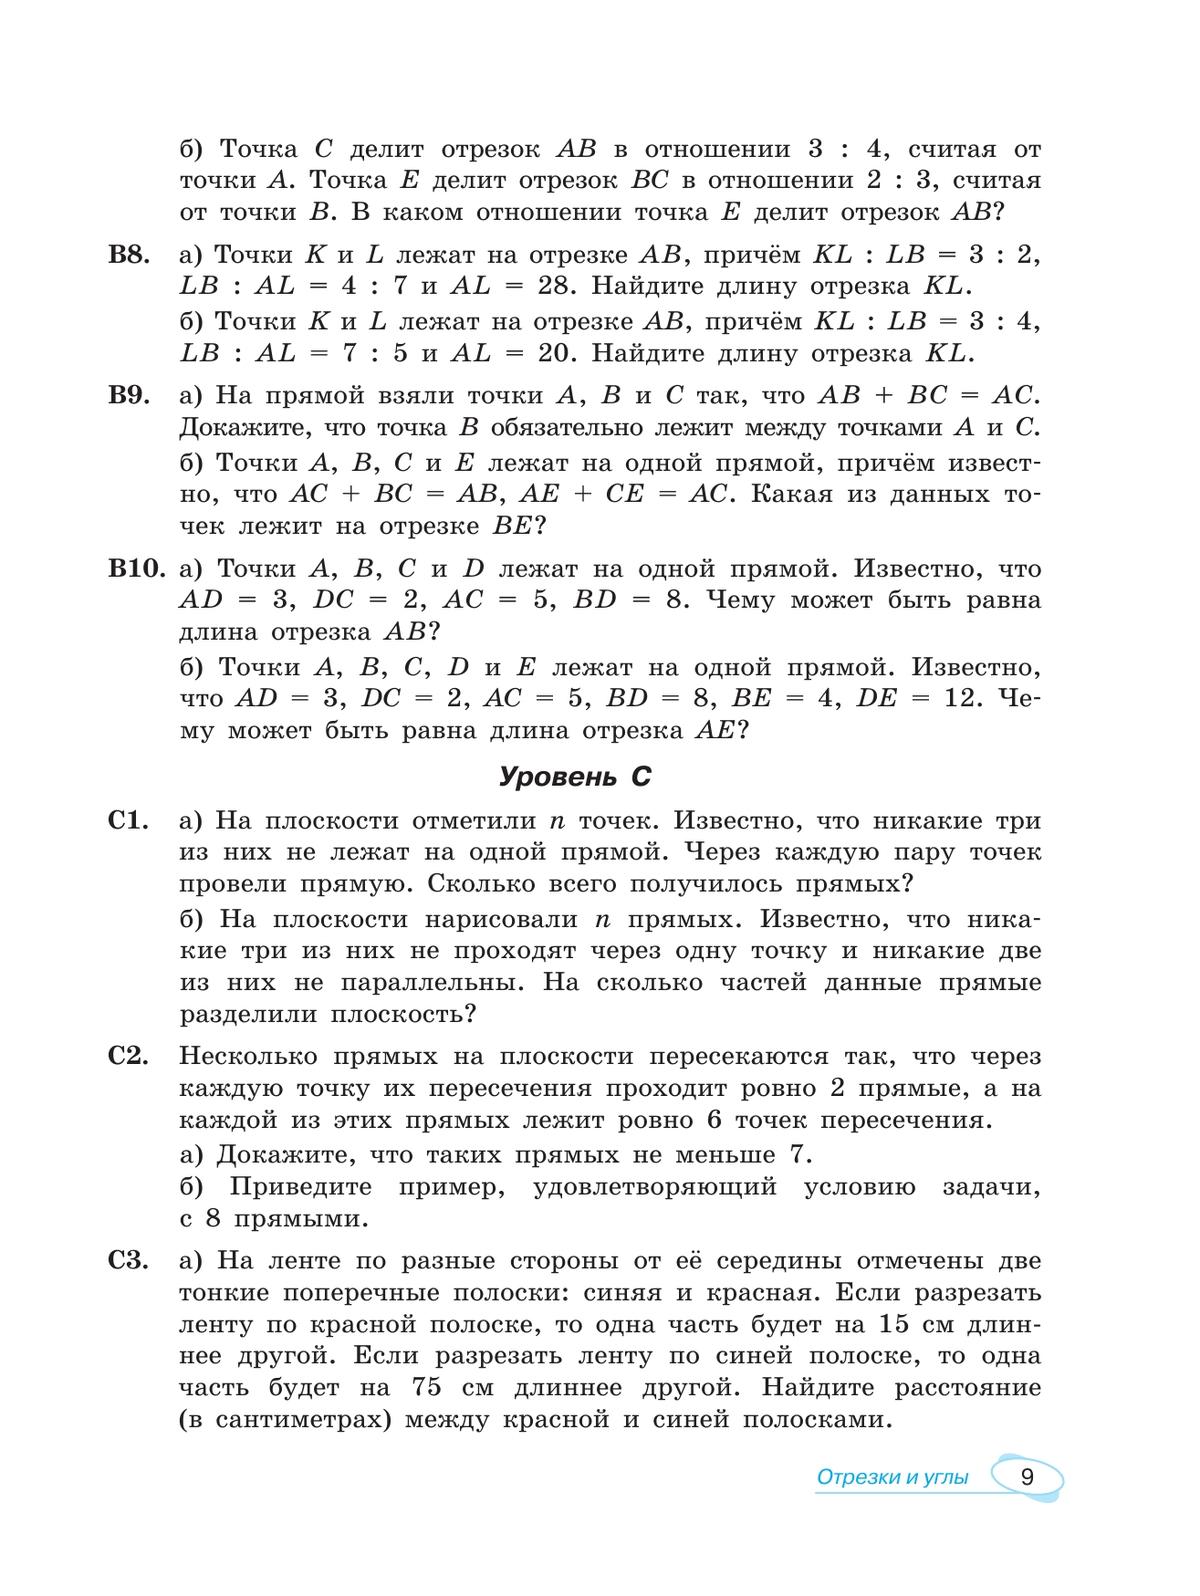 Математика. Универсальный многоуровневый сборник задач. 7-9 класс. В 3 частях. Ч.2. Геометрия 3